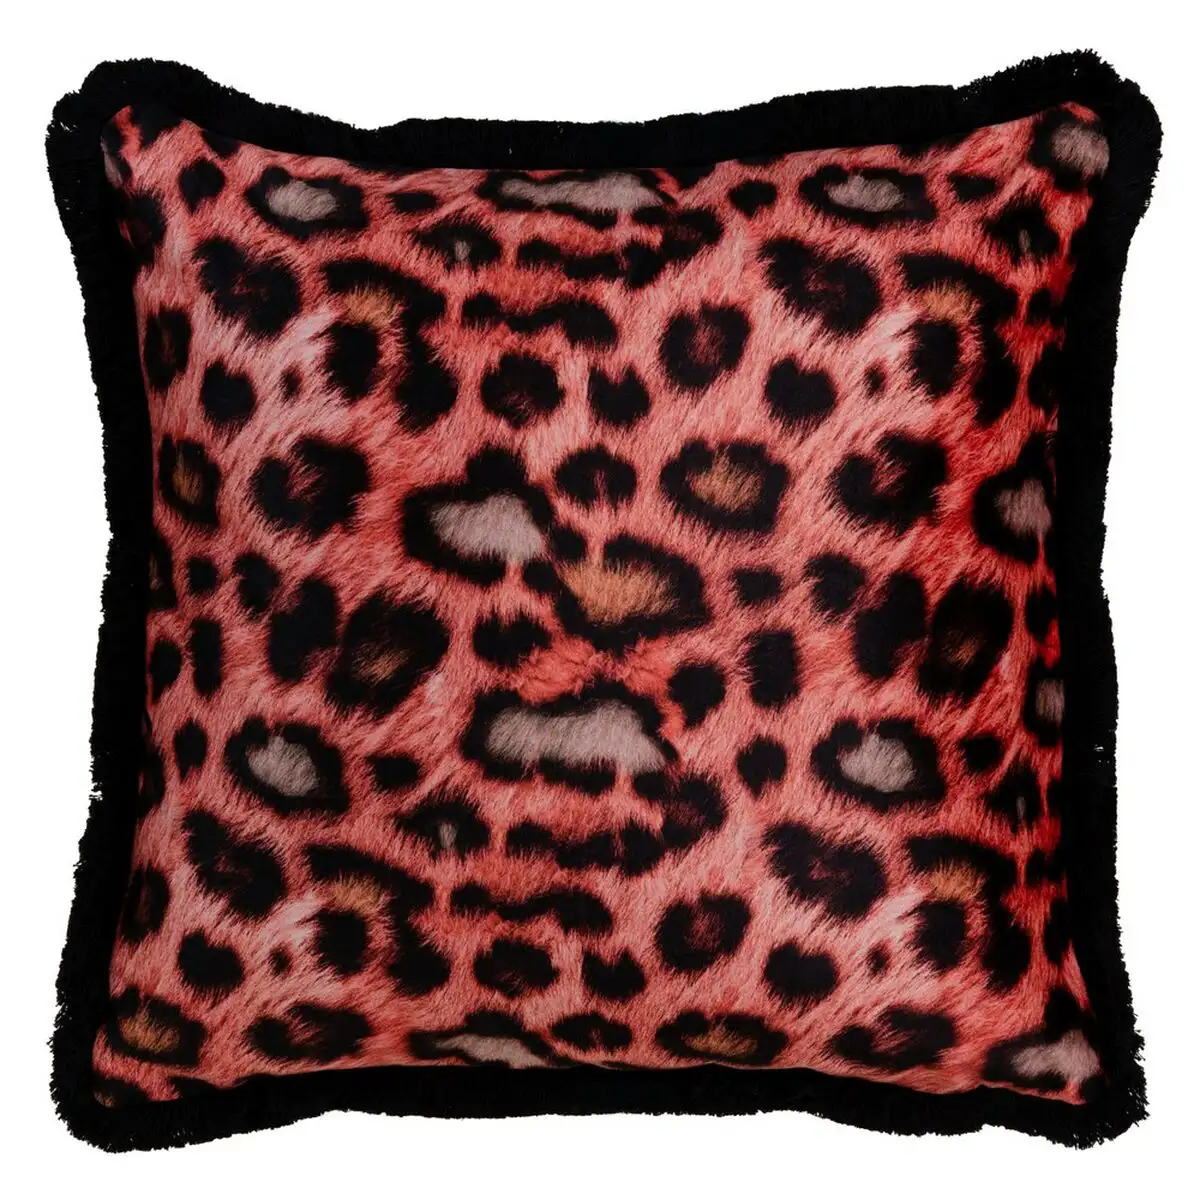 Coussin orange leopard 45 x 45 cm_5563. DIAYTAR SENEGAL - L'Art de Choisir, l'Art de Vivre. Parcourez notre boutique en ligne et découvrez des produits qui transforment chaque choix en une expérience enrichissante.